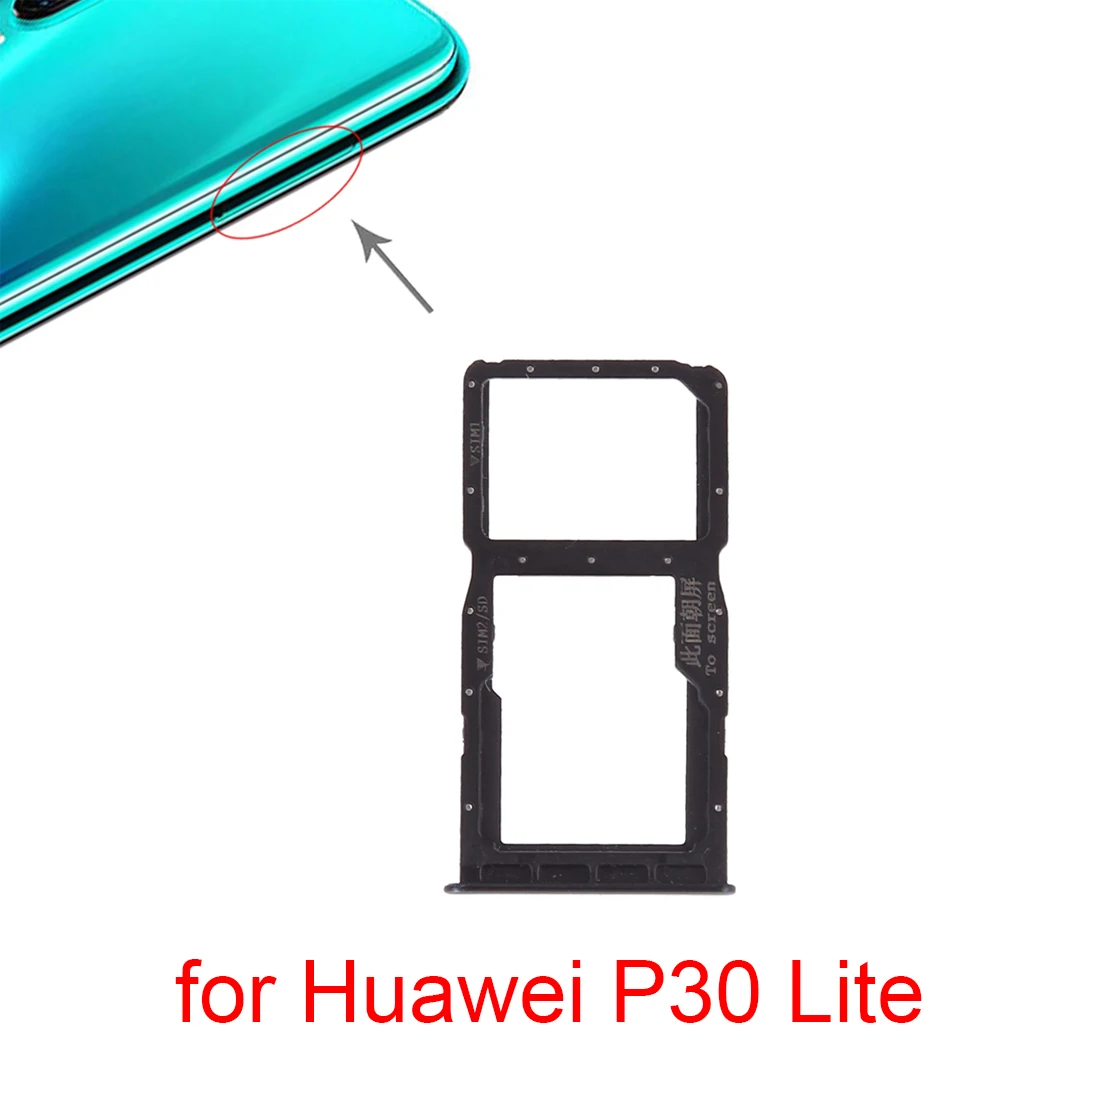 elk Pacifische eilanden pack Voor Huawei P30 Lite Sim Card Tray + Sim Card Tray / Micro Sd kaart Voor  Huawei P30 Lite|Simkaart adapters| - AliExpress